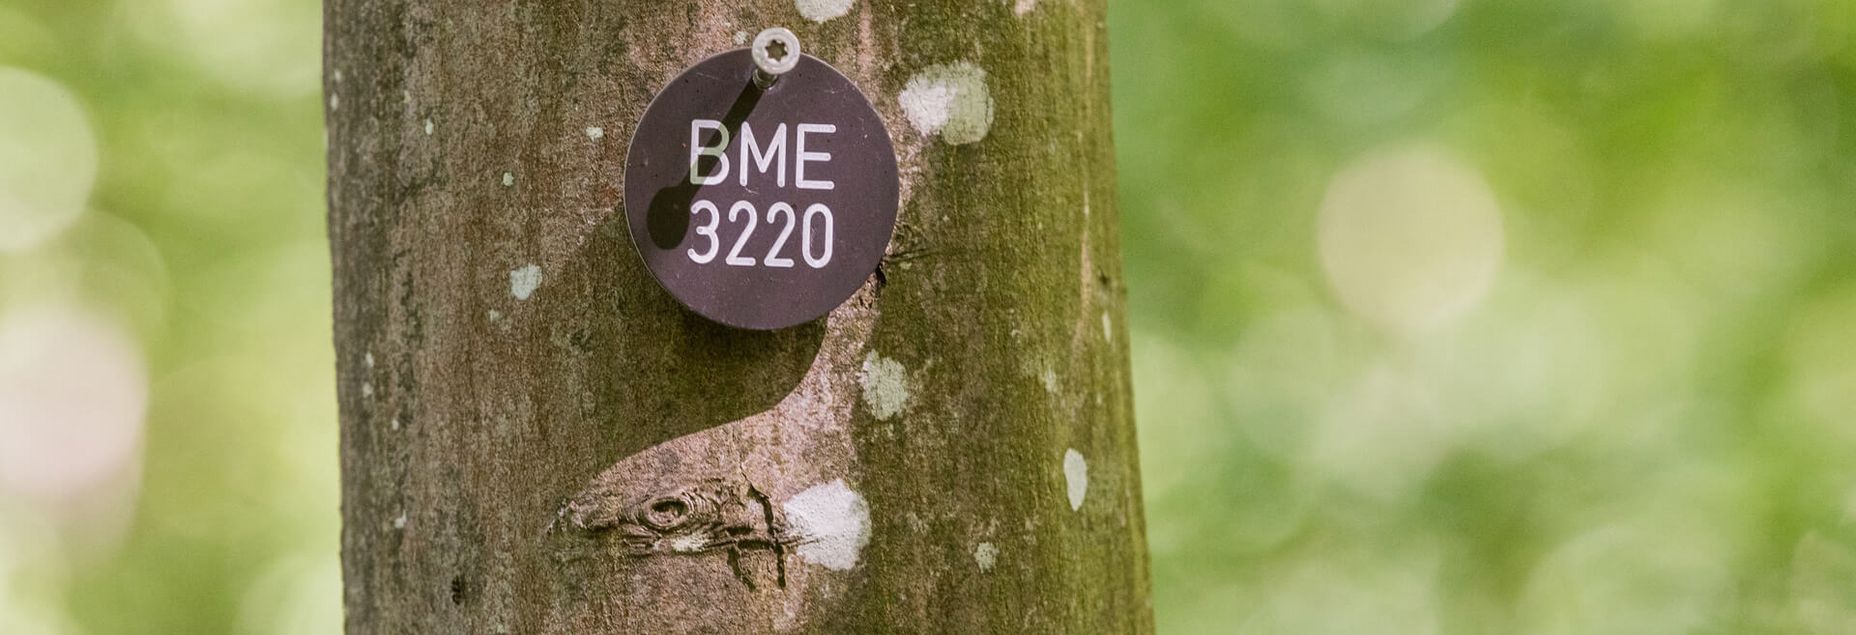 Baum BME 3220 - Plakette